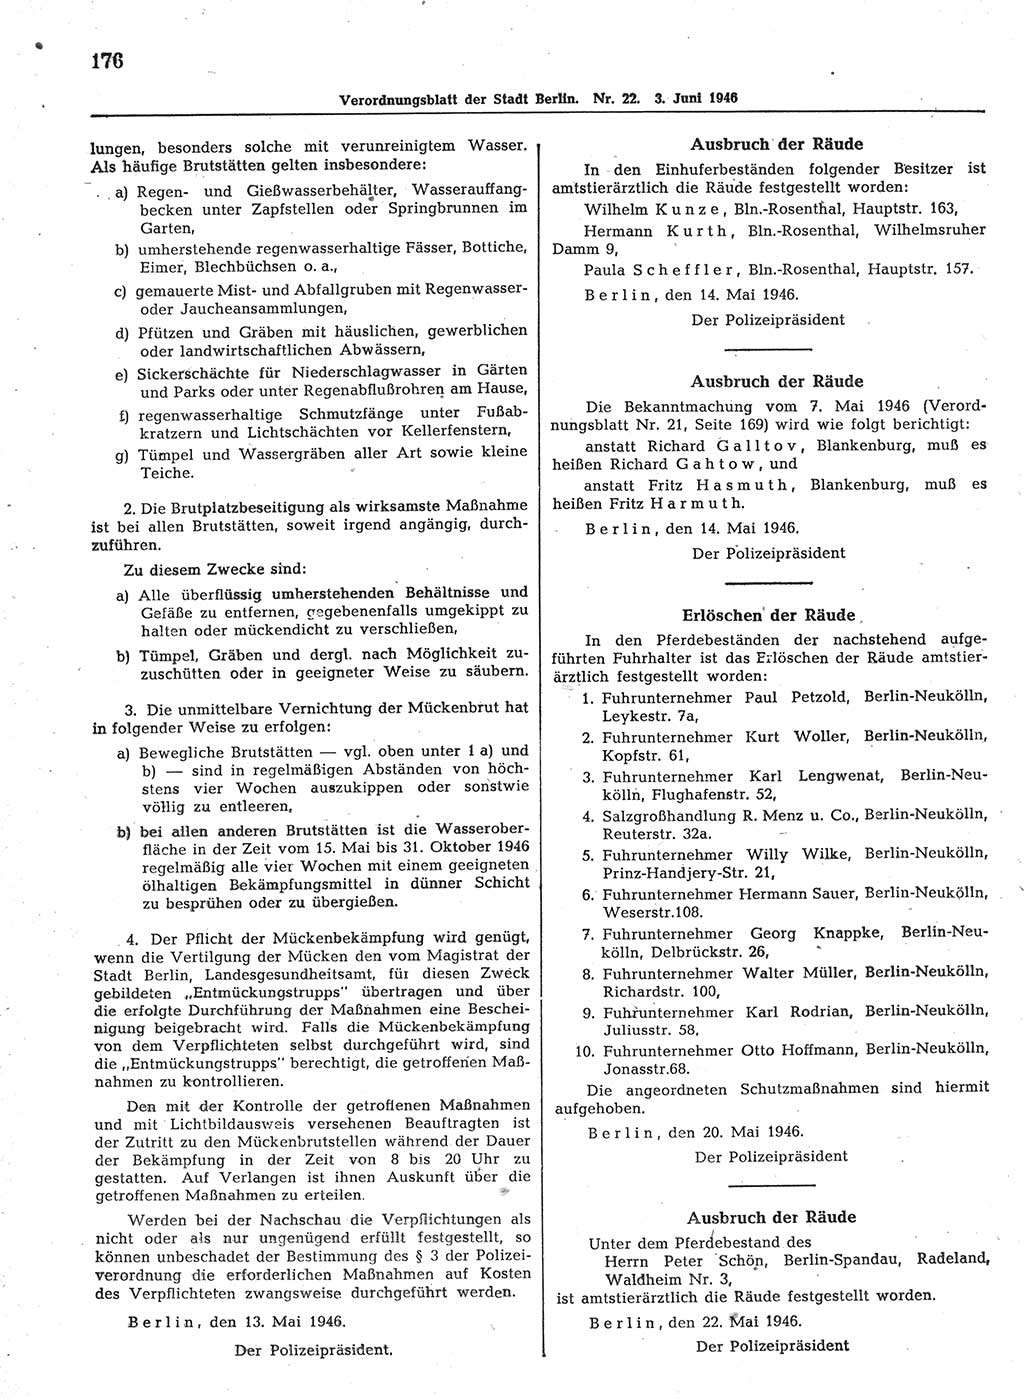 Verordnungsblatt (VOBl.) der Stadt Berlin, für Groß-Berlin 1946, Seite 176 (VOBl. Bln. 1946, S. 176)